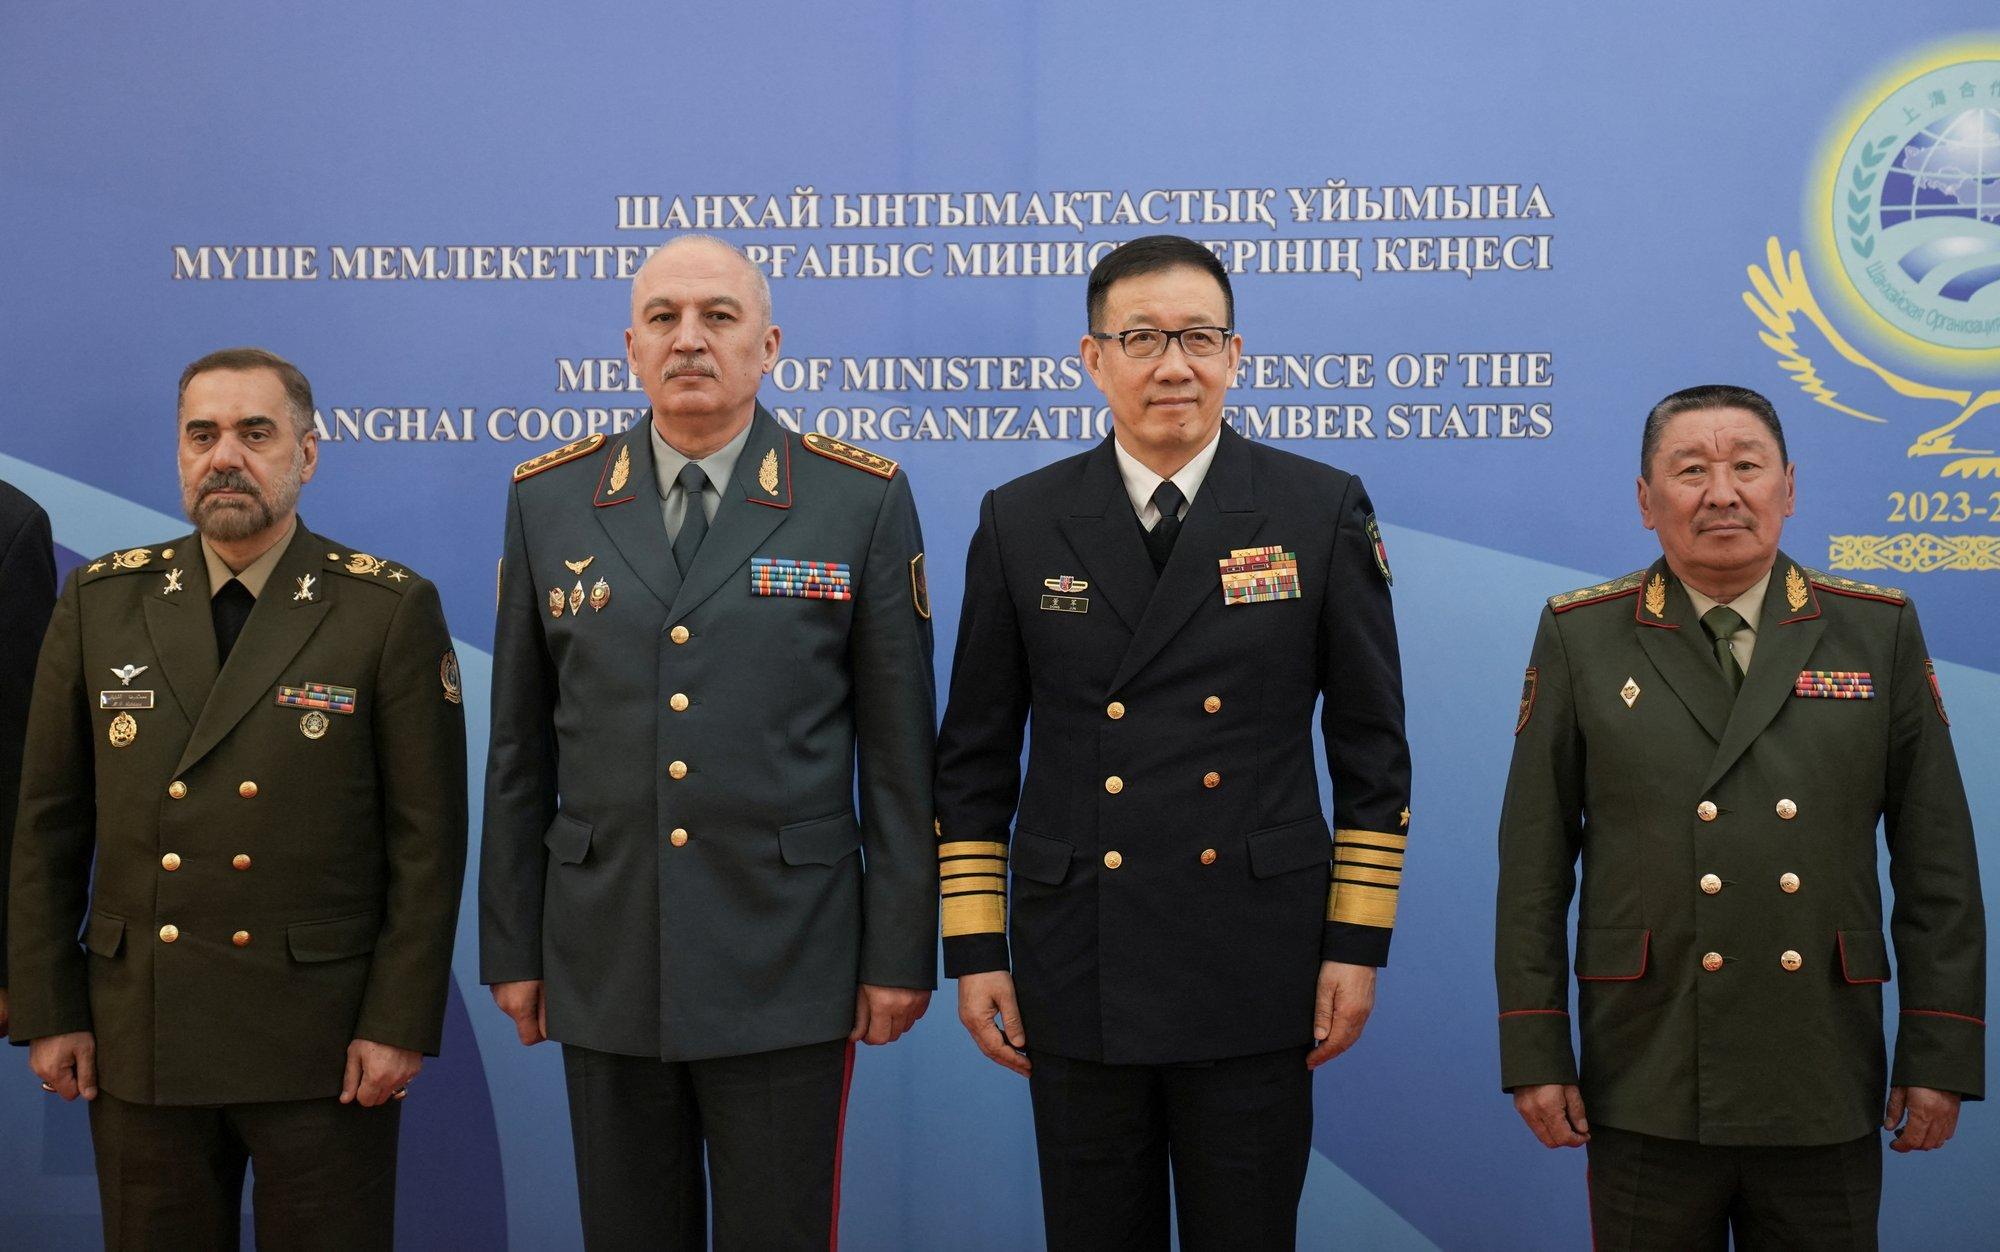 Iranas ir Kinija vienija jėgas dėl karinio bendradarbiavimo